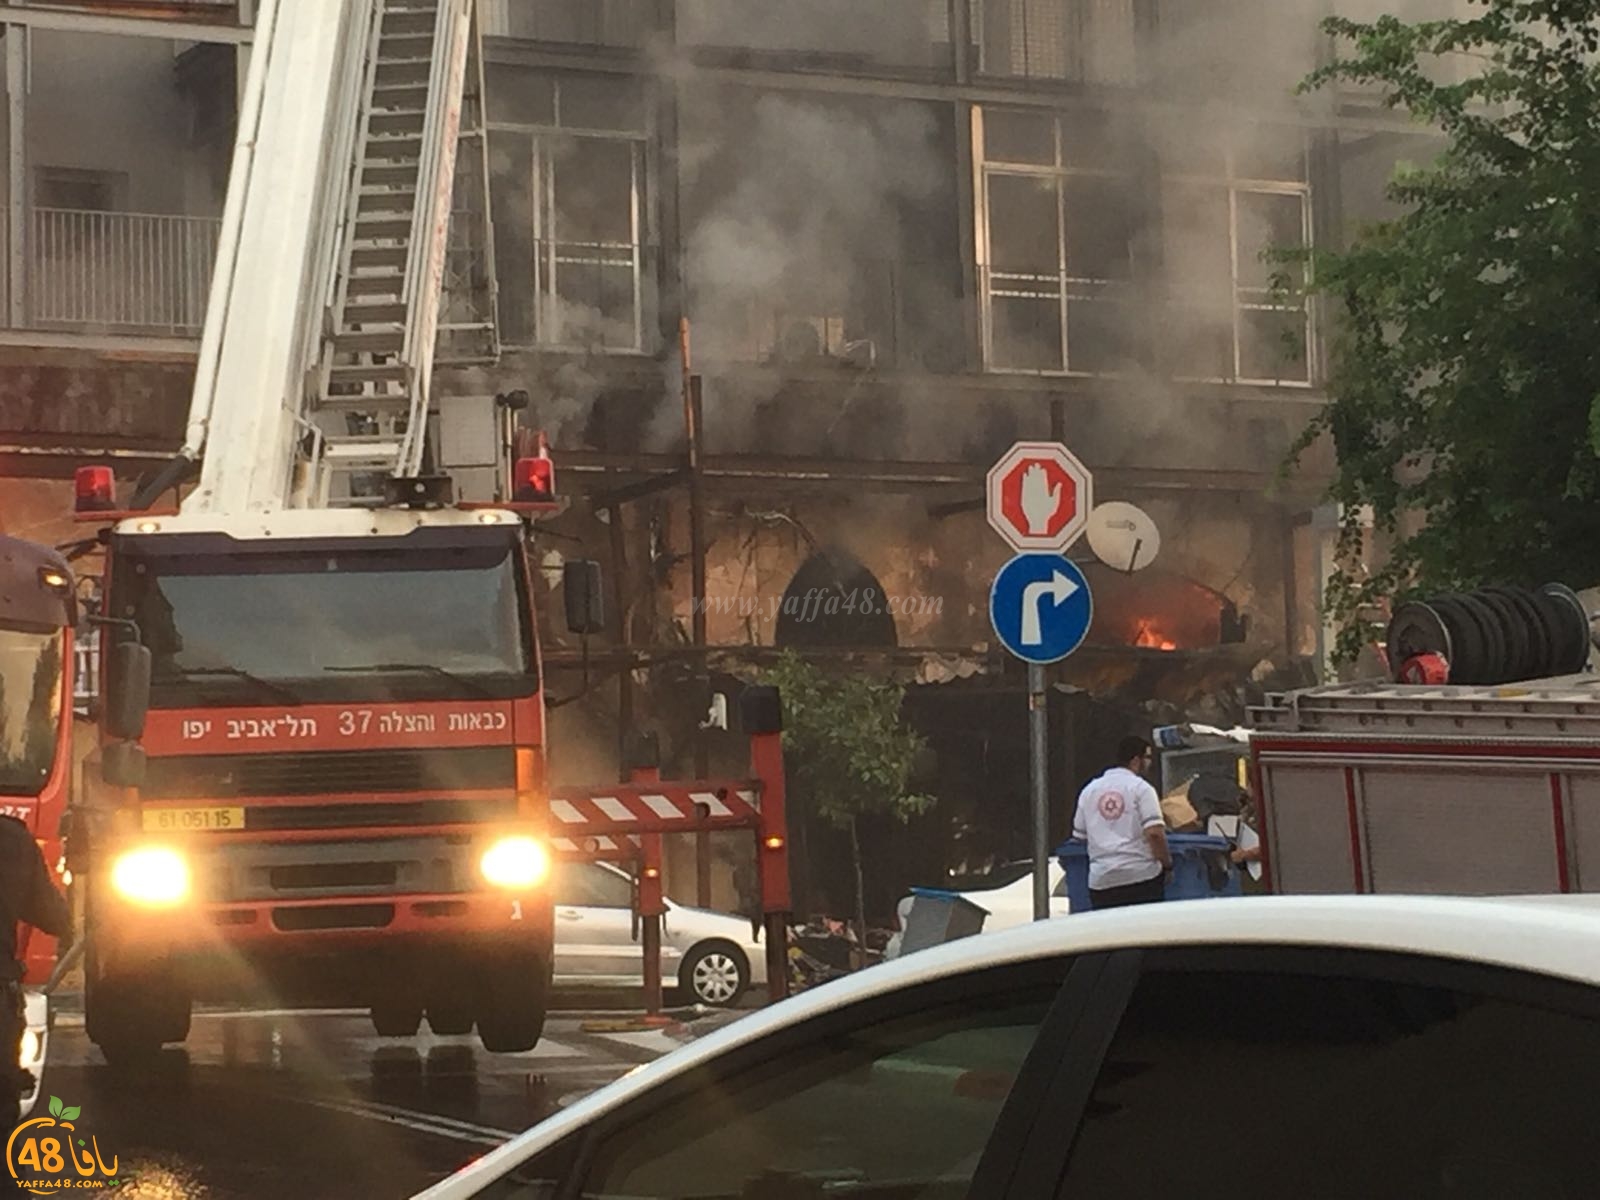 فيديو يافا:حريق هائل في مبنى بشارع يهودا مرخوزا والشرطة تغلق الطرق